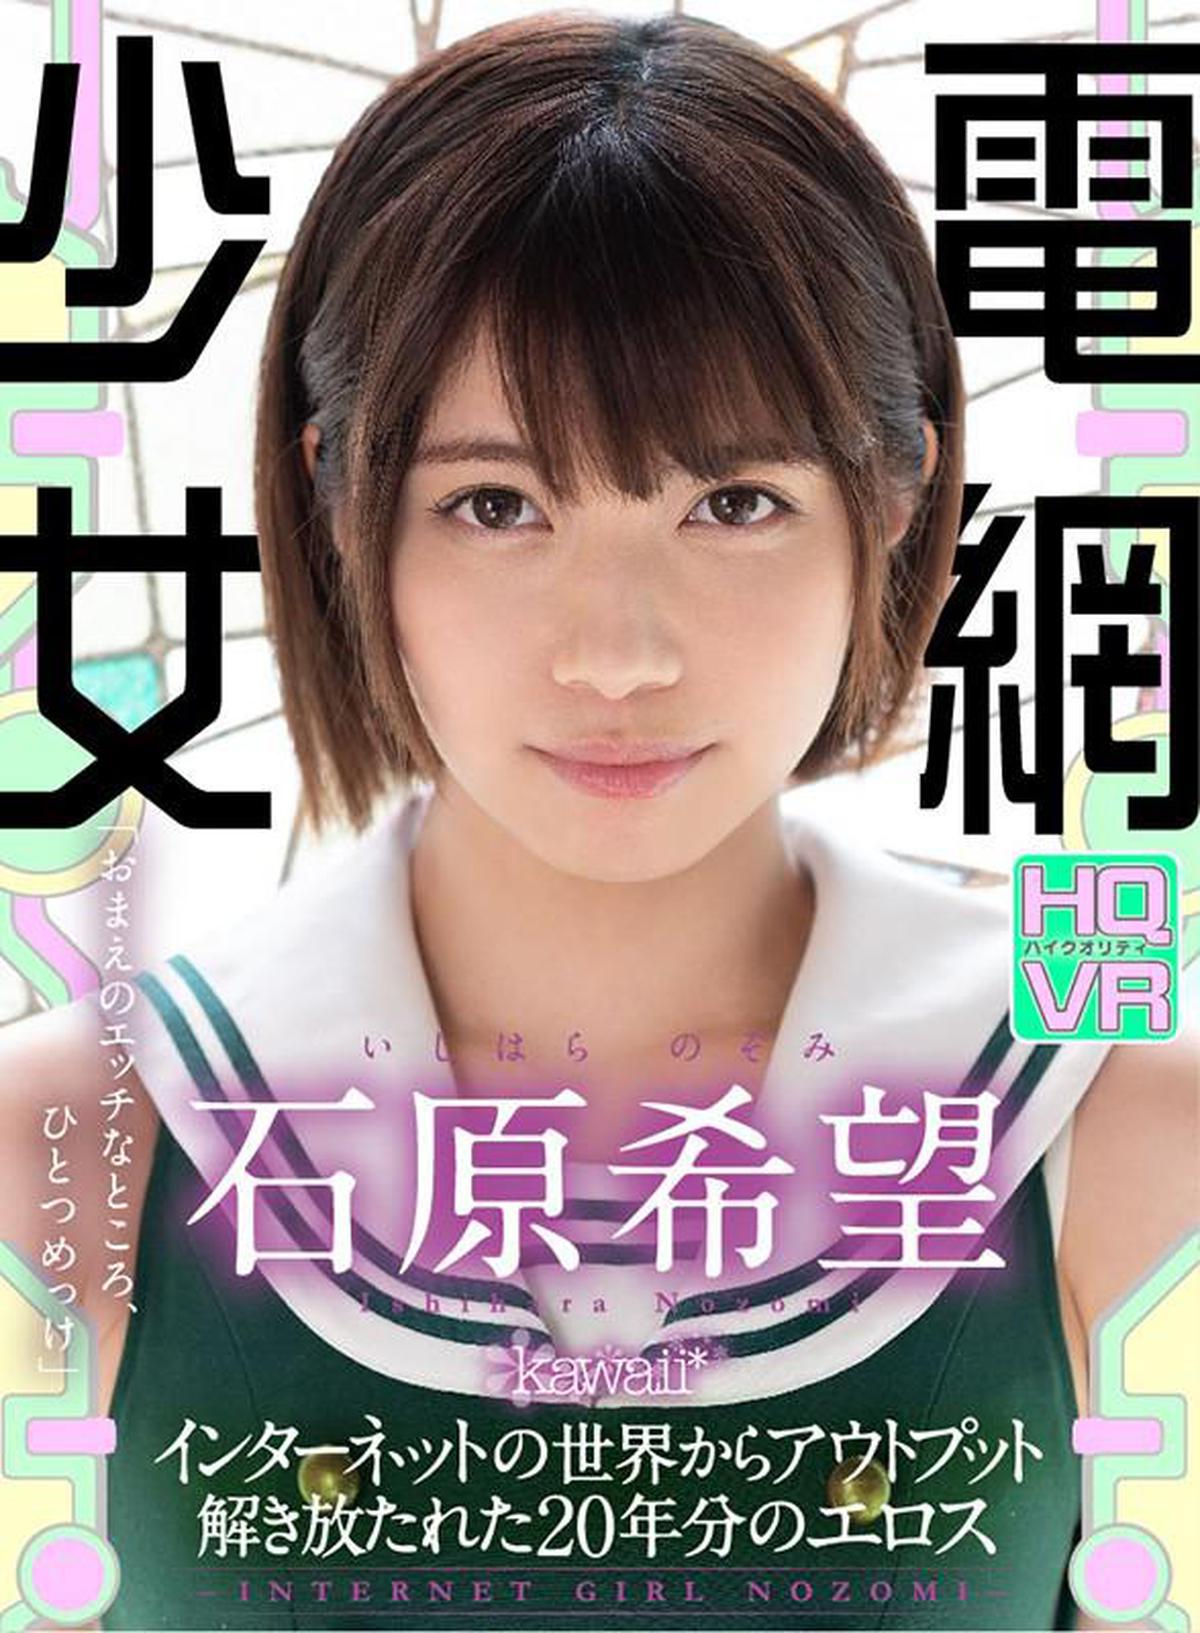 (VR) KAVR-097 전망 소녀-INTERNET GIRL NOZOMI-해방된 20년분의 에로스 이시하라 희망